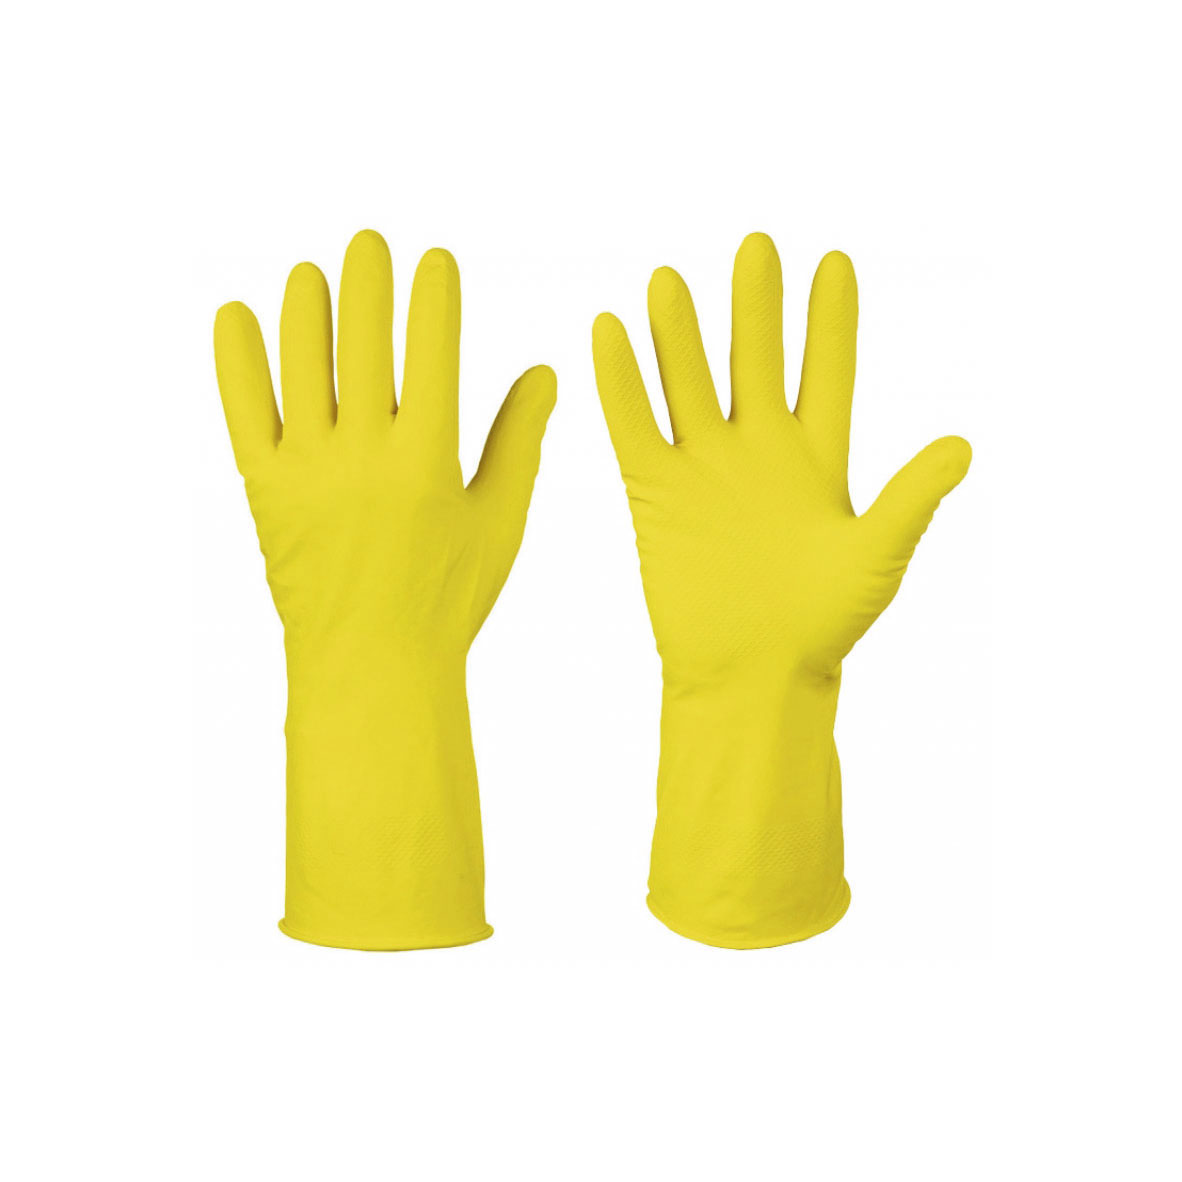 Перчатки хозяйственные латексные, с хлопковым напылением, разм.L, желтые, (упак. 1 пара)